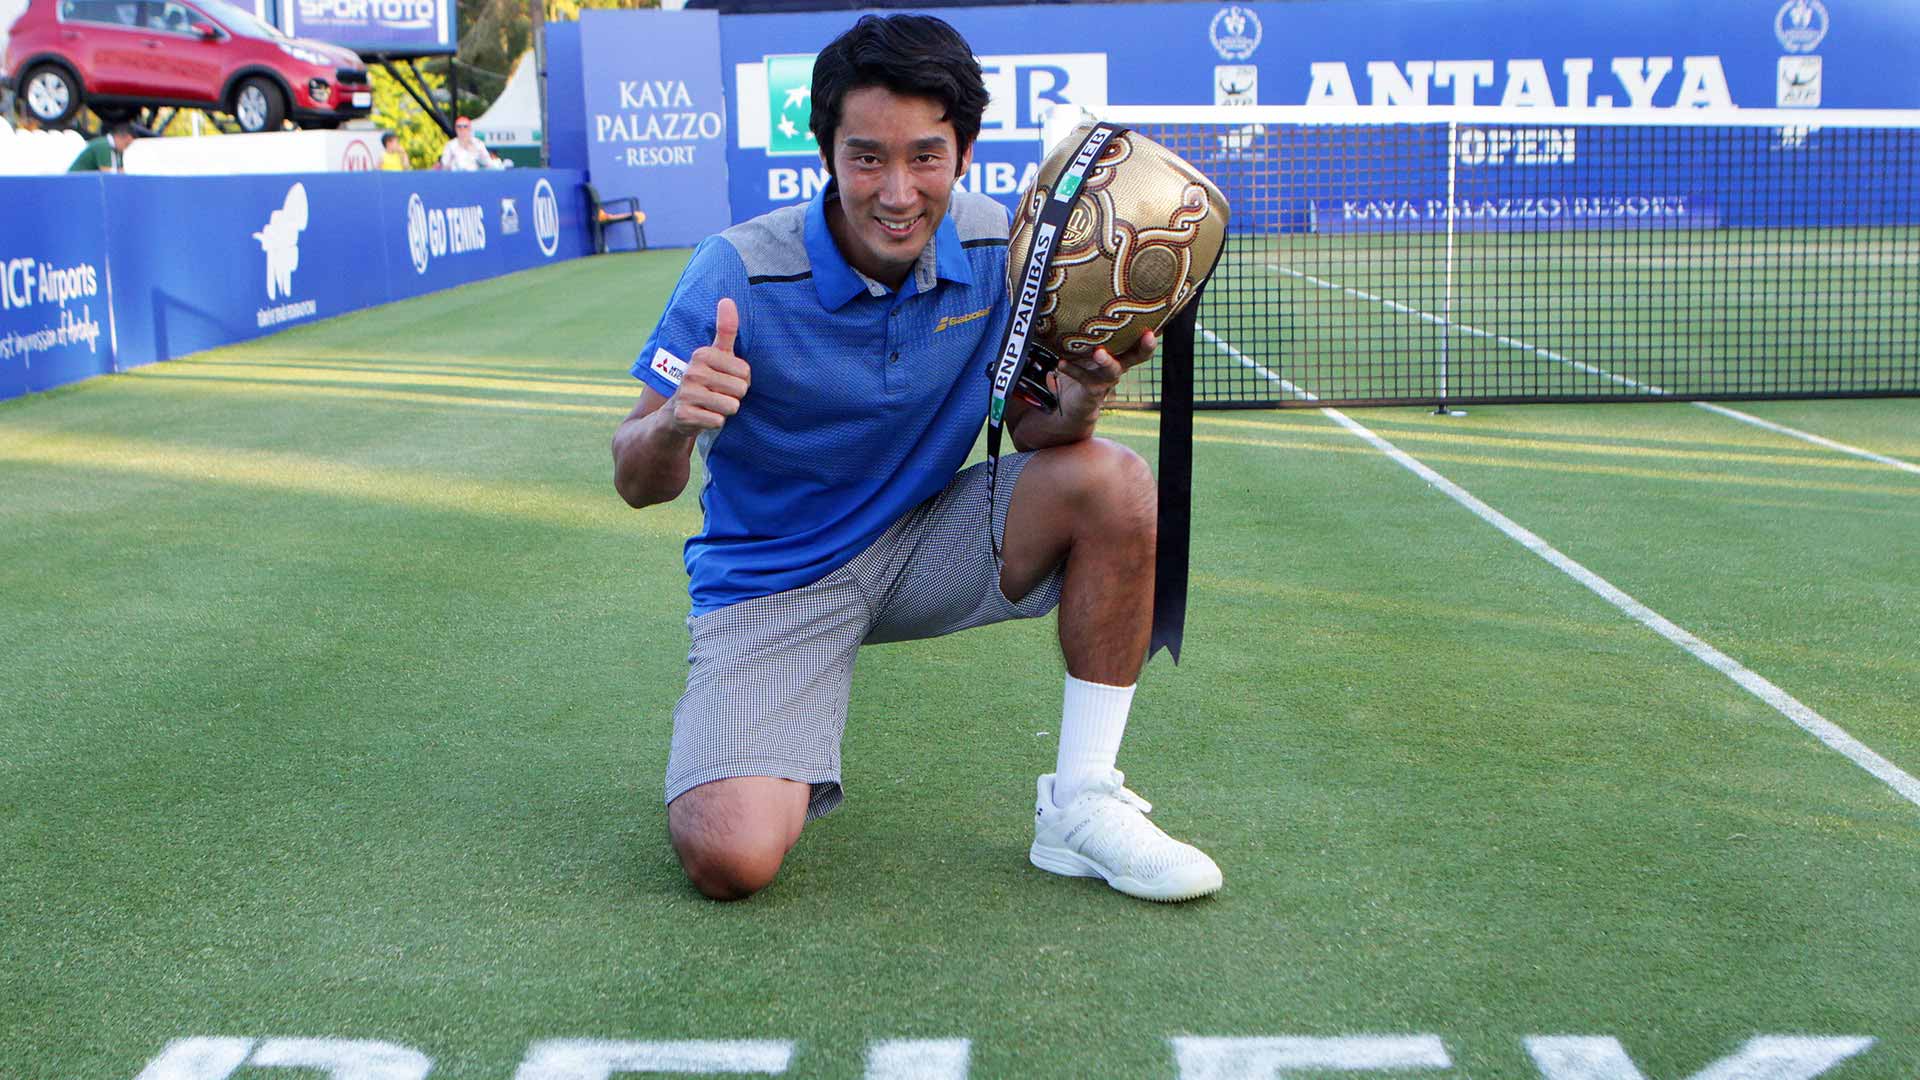 Demon Play Join abolish Sugita Surges To Maiden ATP World Tour Crown | ATP Tour | Tennis